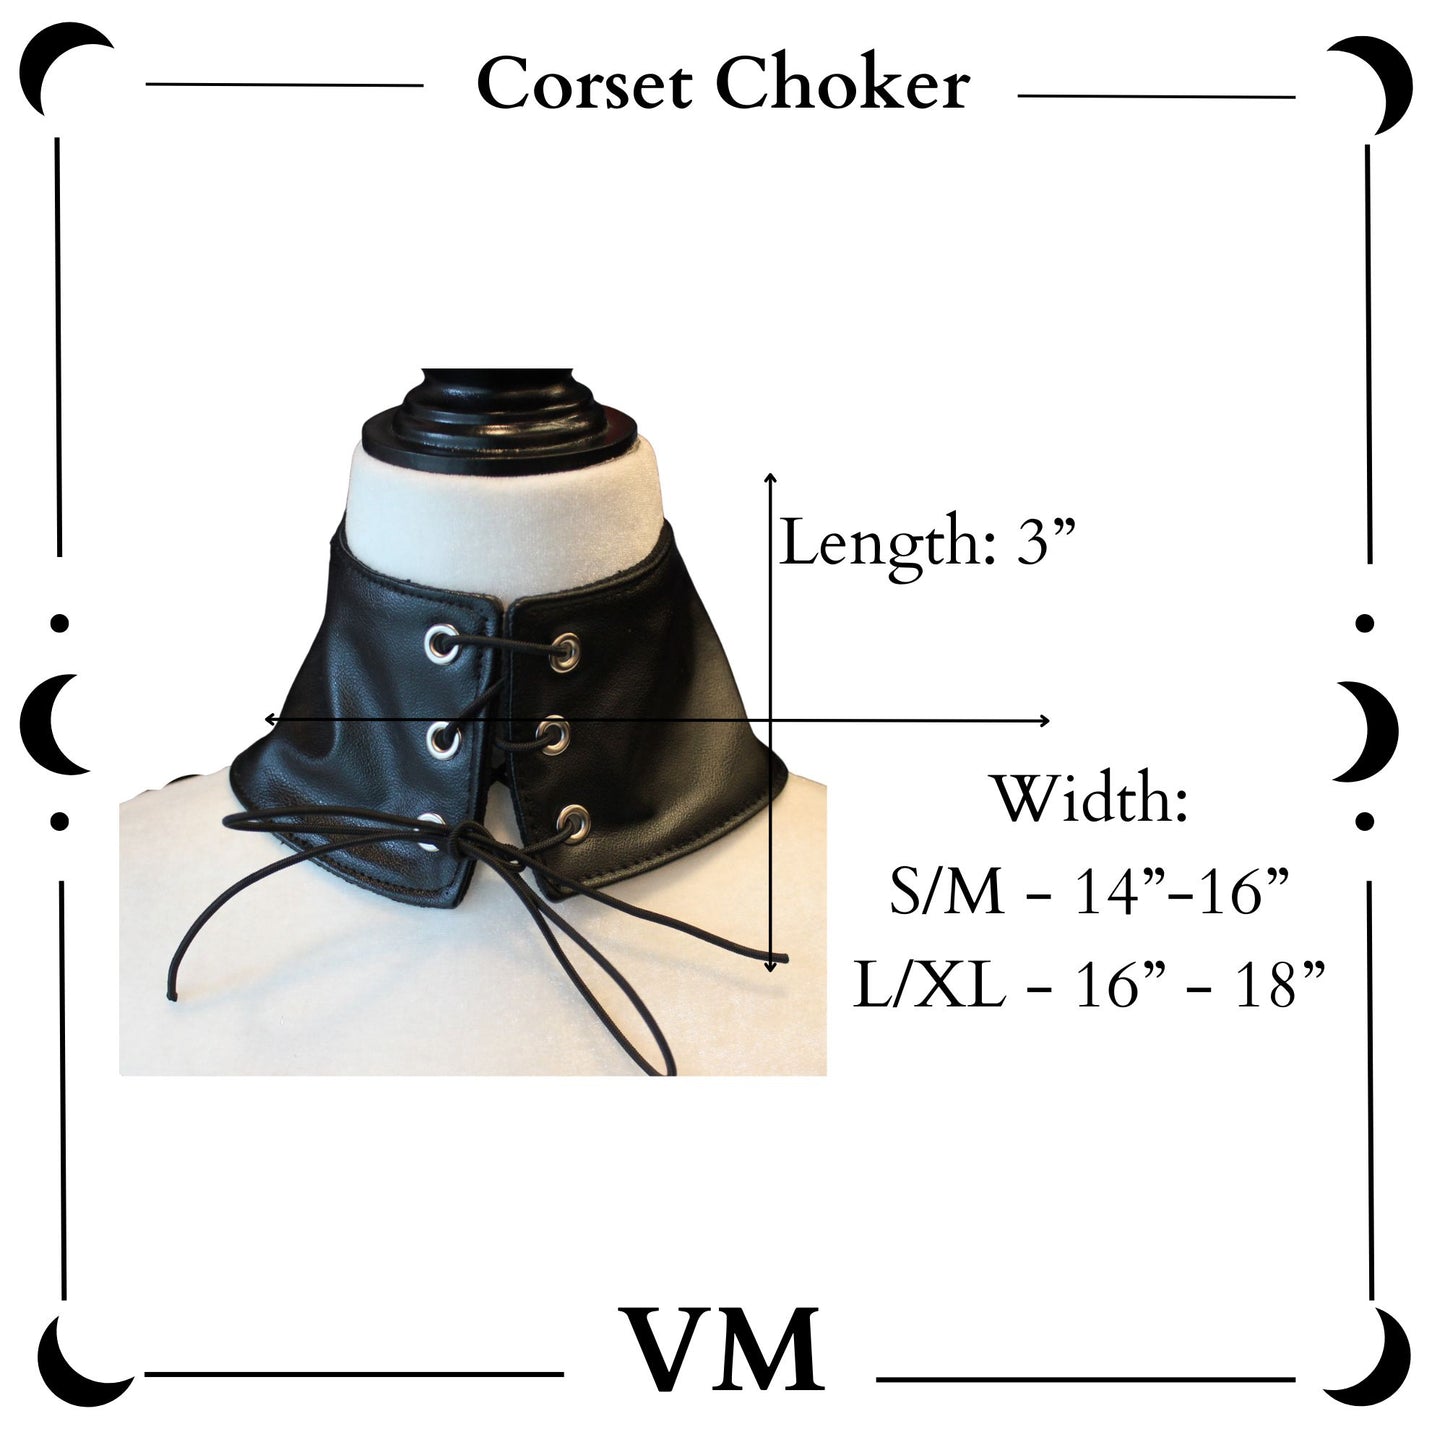 The VM Corset Choker